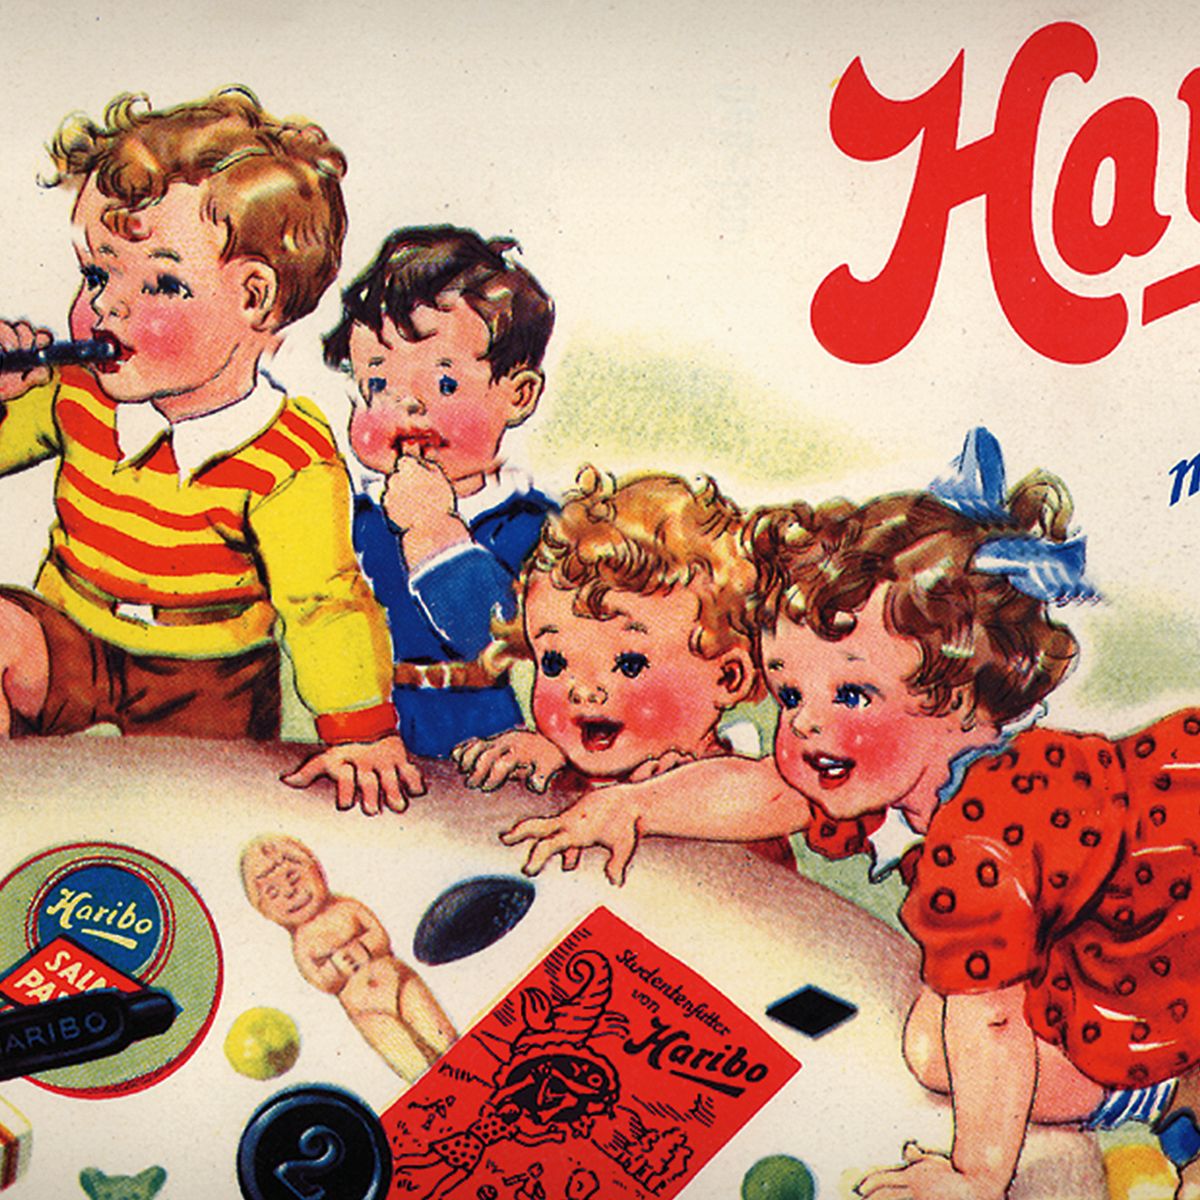 子供が遊んでいる様子を描いたHARIBOの歴史的な広告